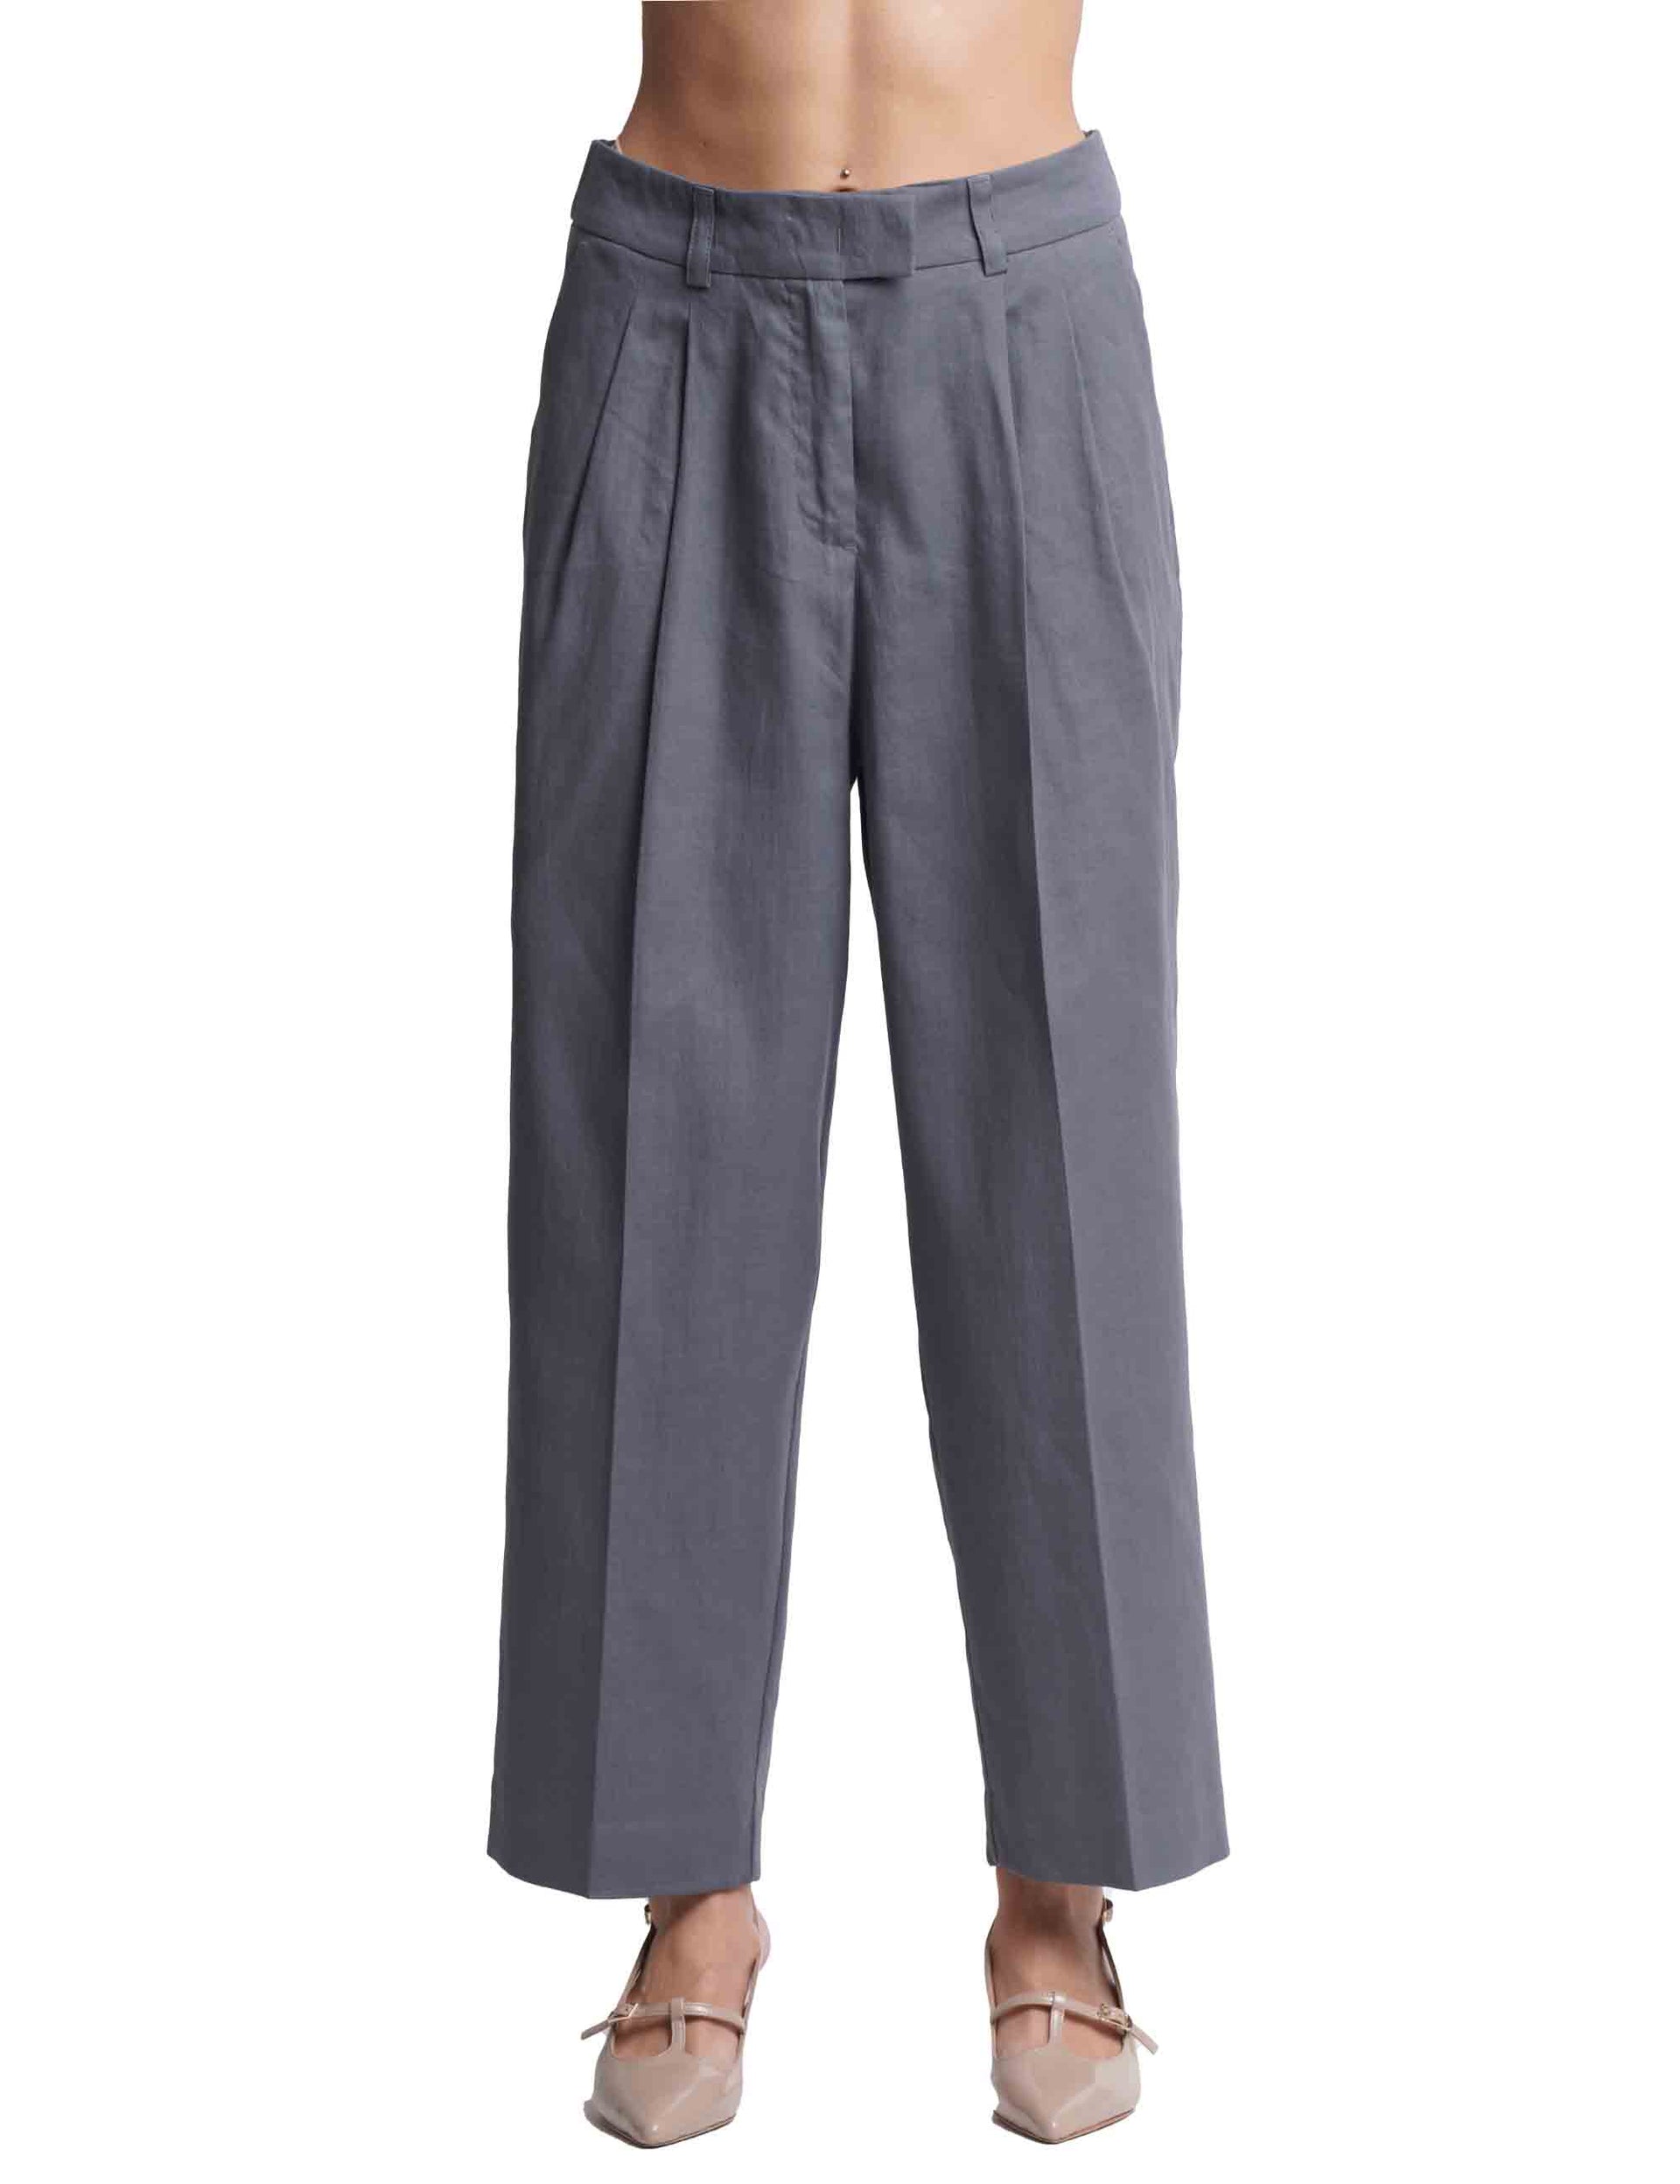 Pantaloni donna Linen in misto lino e cotone grigio